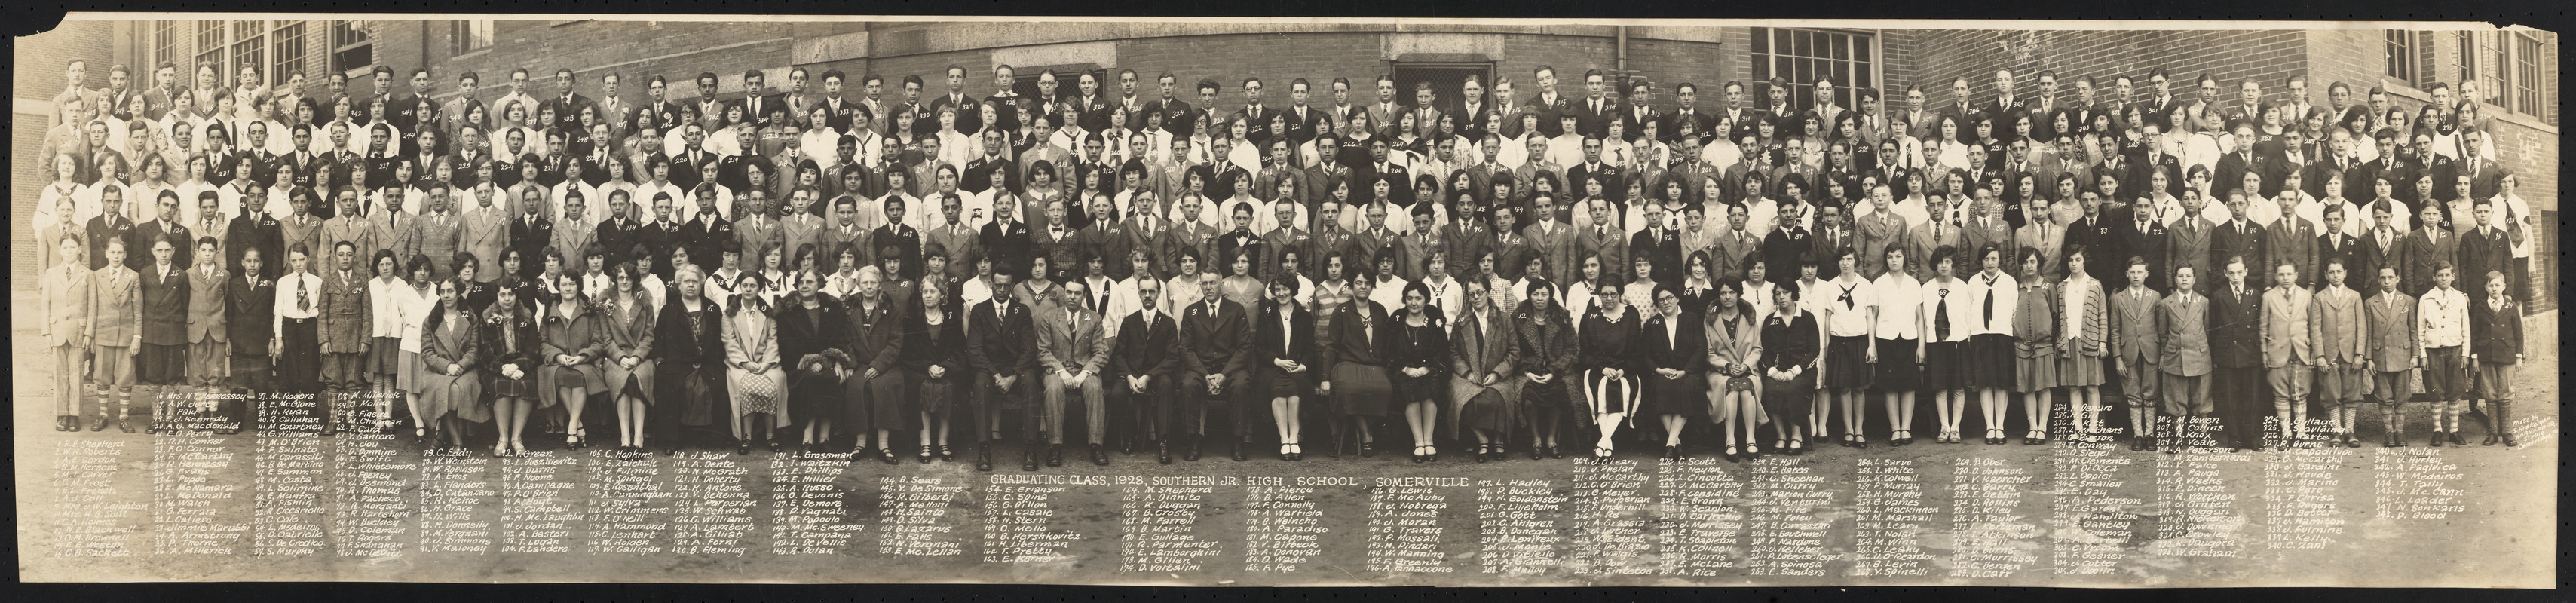 Graduating class, 1928, Southern Jr. High School, Somerville